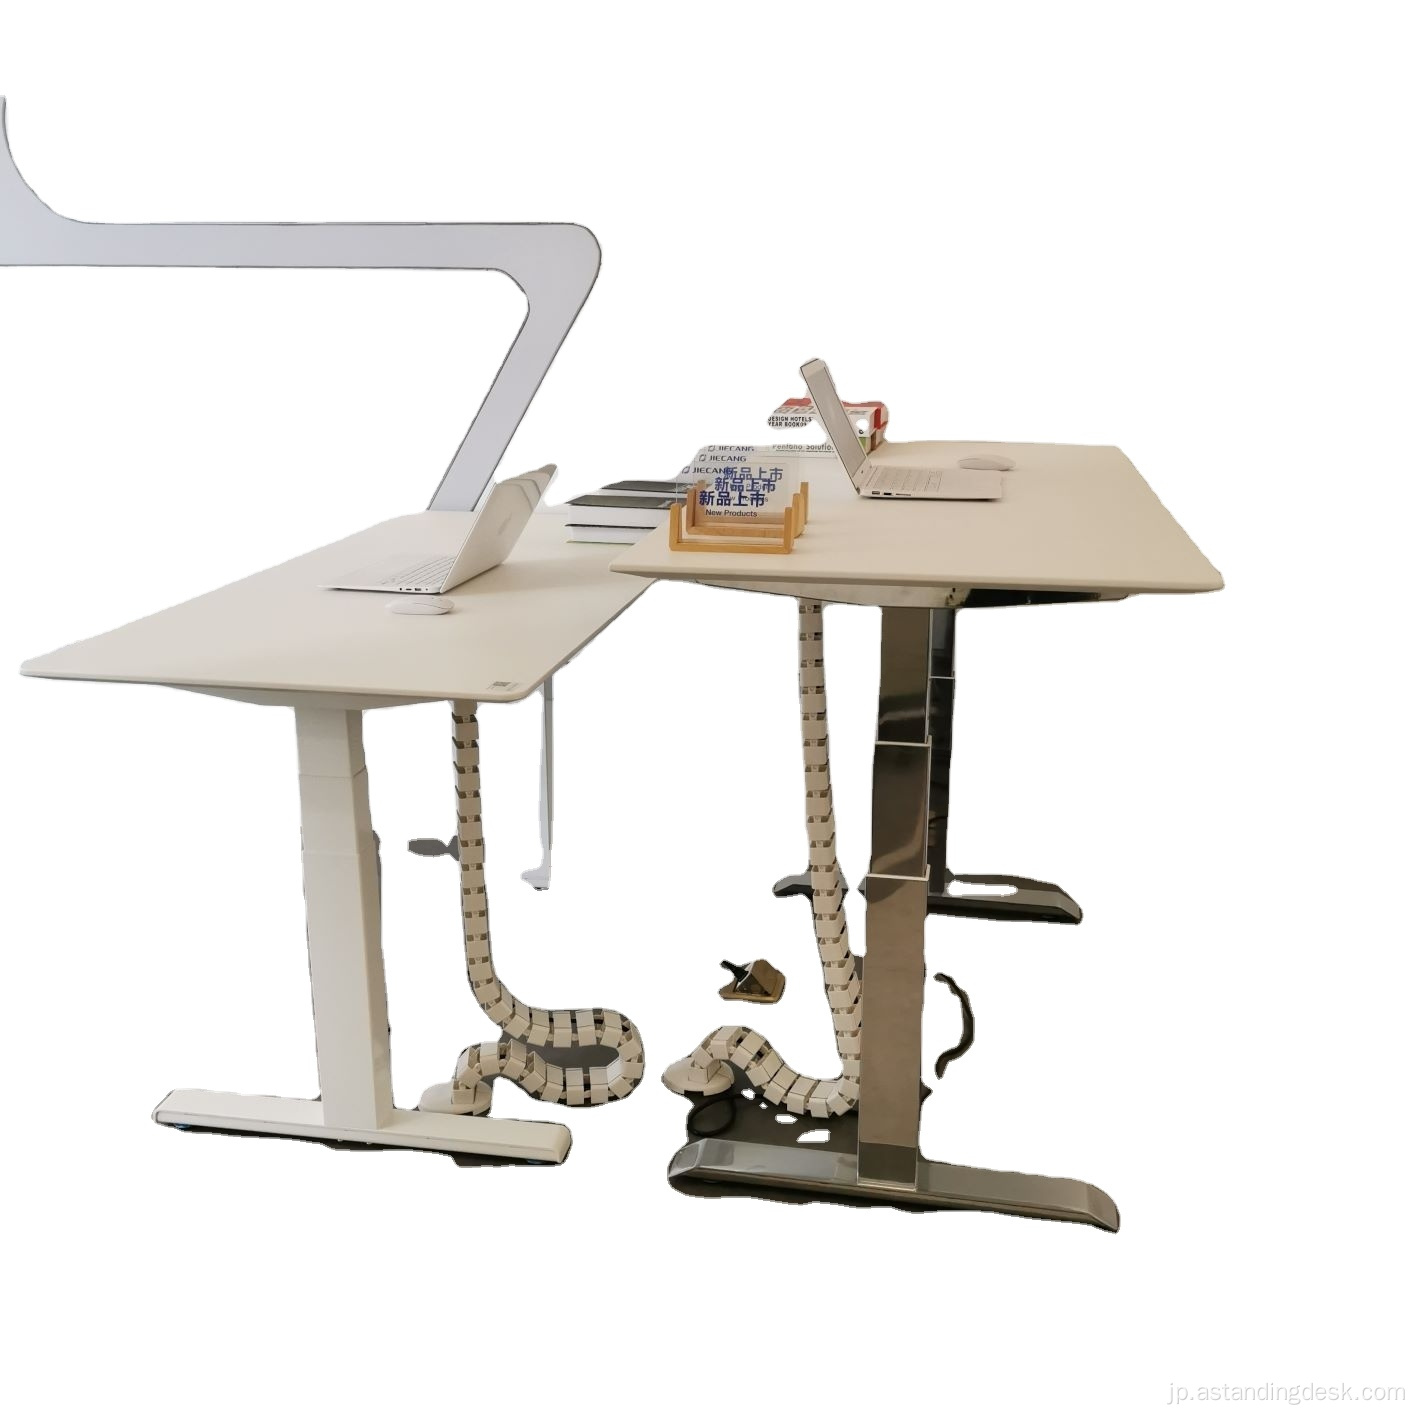 適切に設計された人間工学に基づいた調整可能なDoctors Office Desk